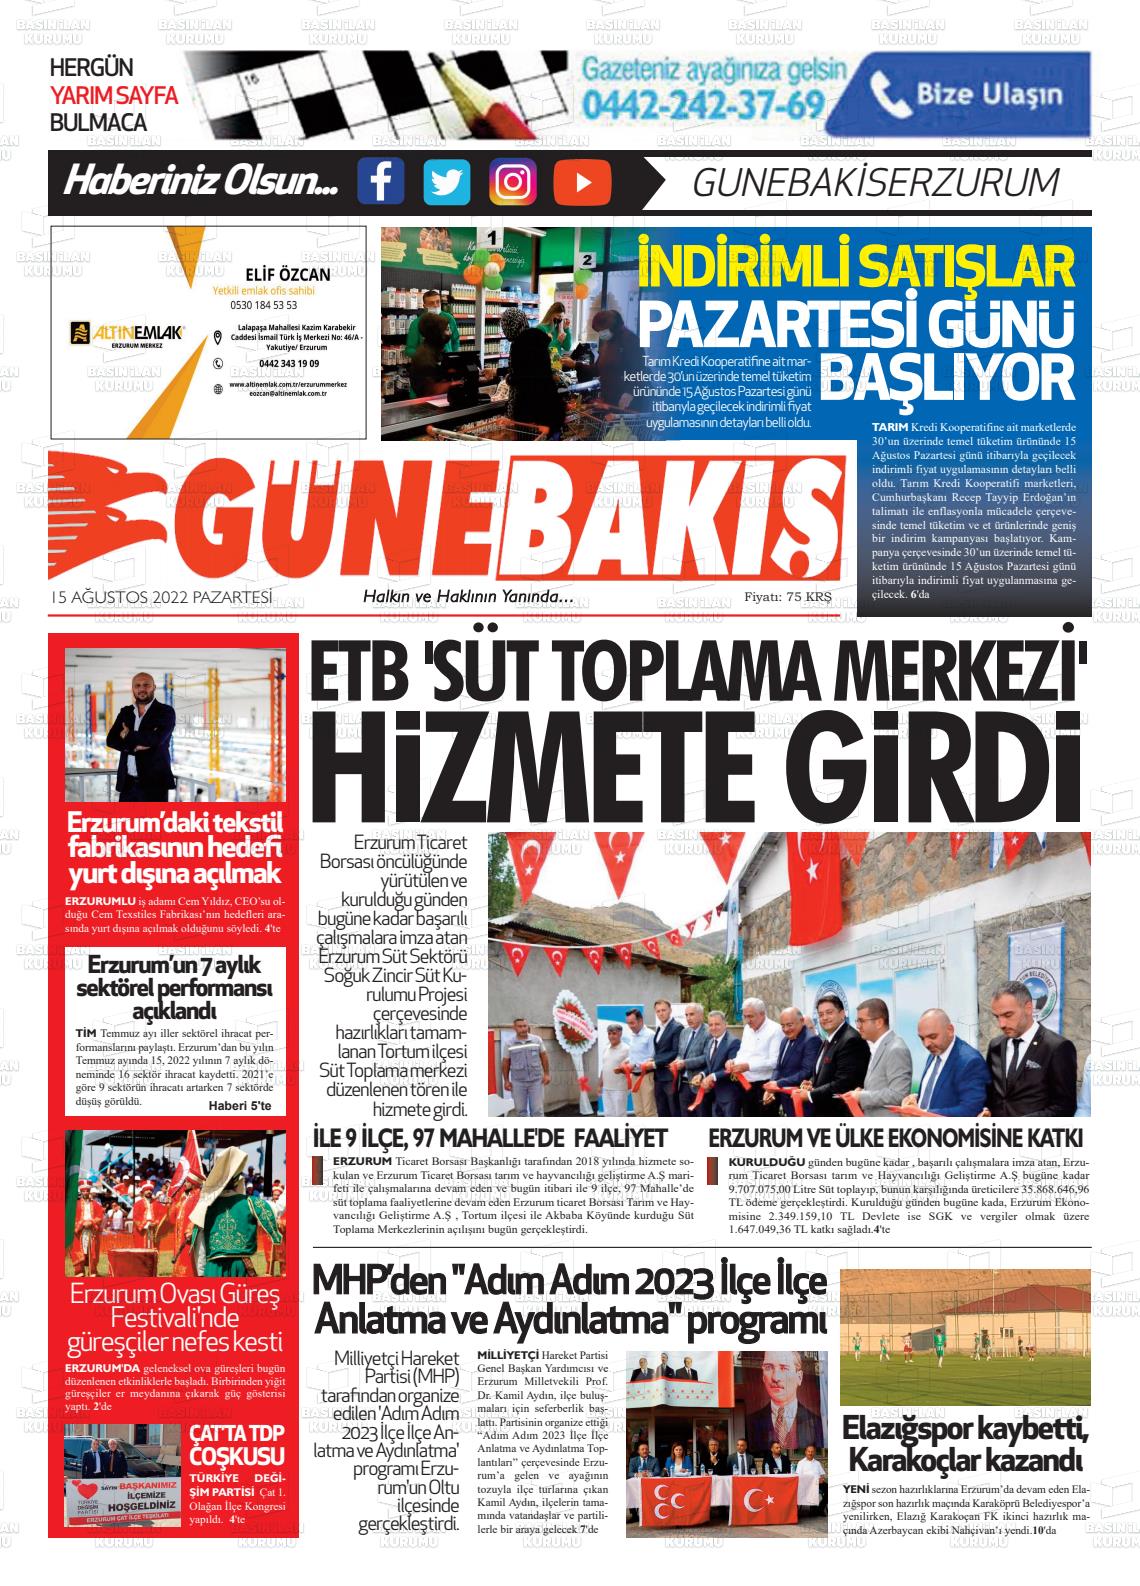 15 Ağustos 2022 Erzurum Günebakış Gazete Manşeti